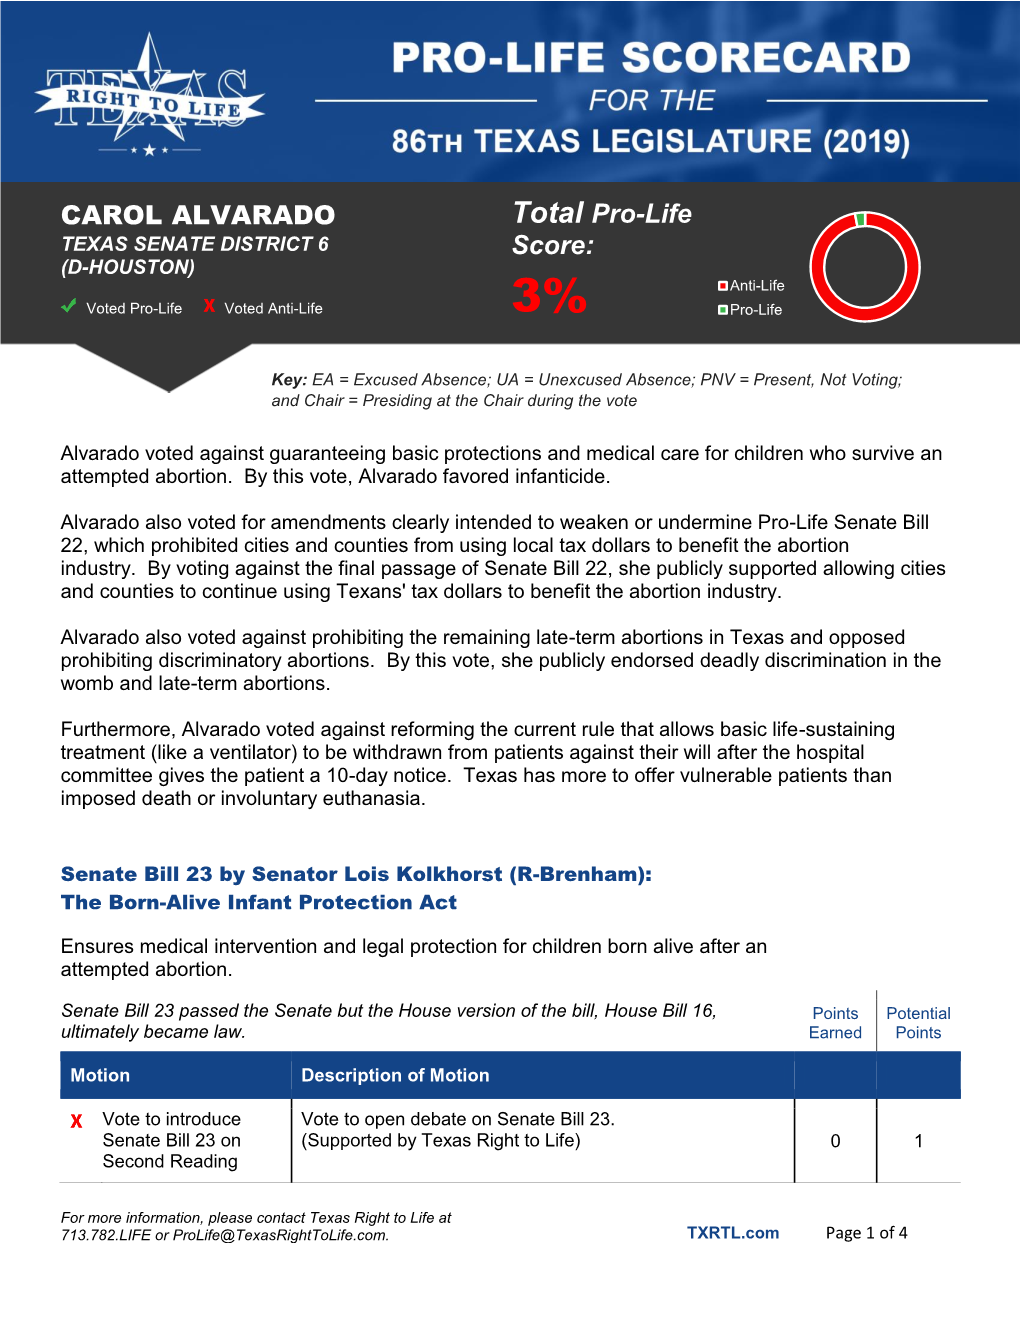 CAROL ALVARADO Total Pro-Life Score